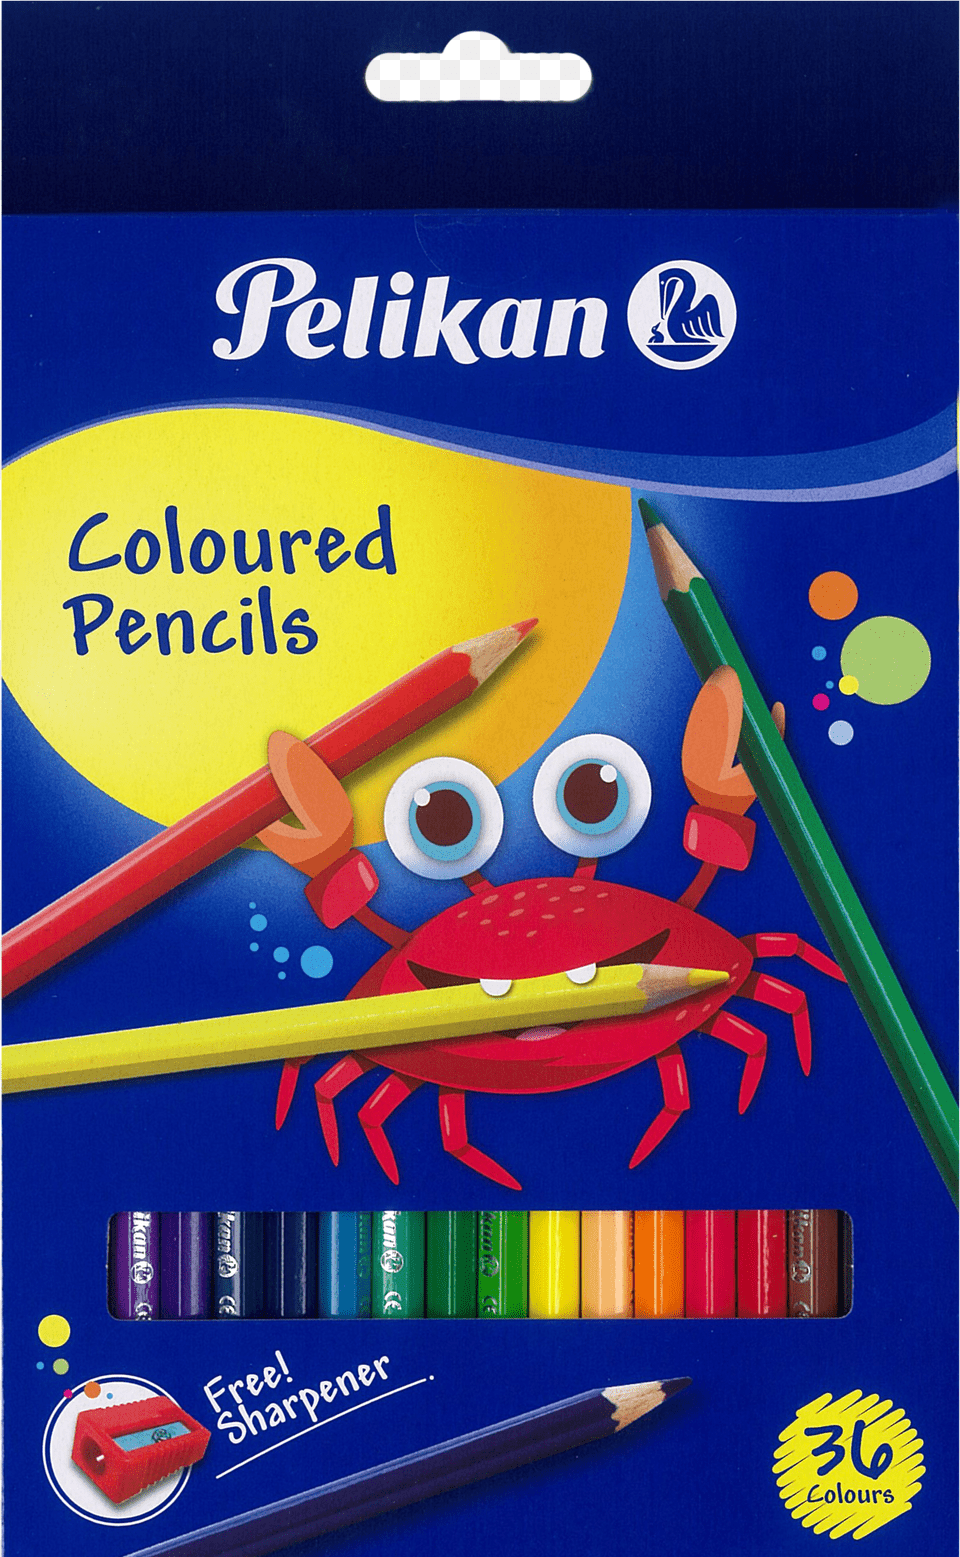 Coloured Pencils 36 Colours Pelikan 36 Colour Pencil Set, Art, Stained Glass, Chandelier, Lamp Png Image